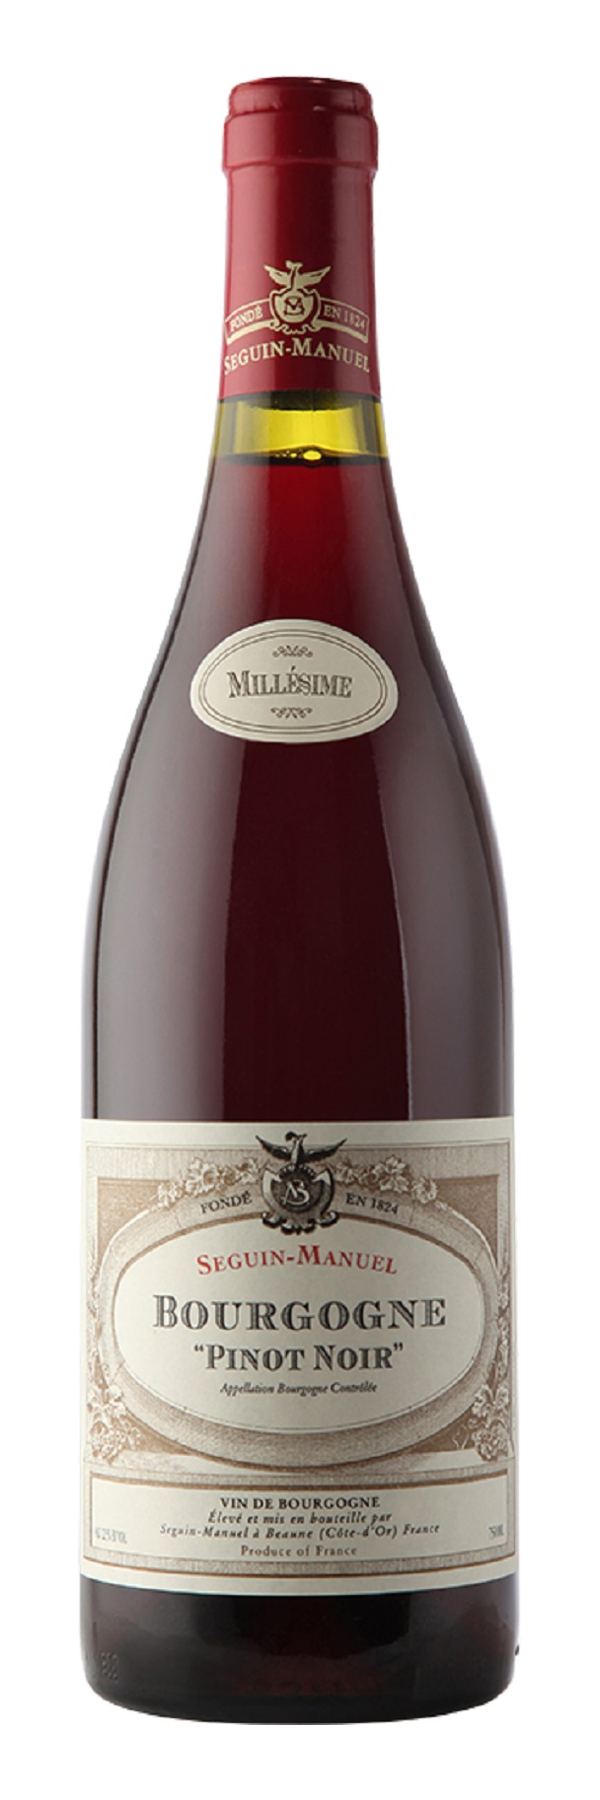 Seguin-Manuel Bourgogne Pinot Noir 2020 0,75l | LAKAAF.DE Wein Shop | Rotweine